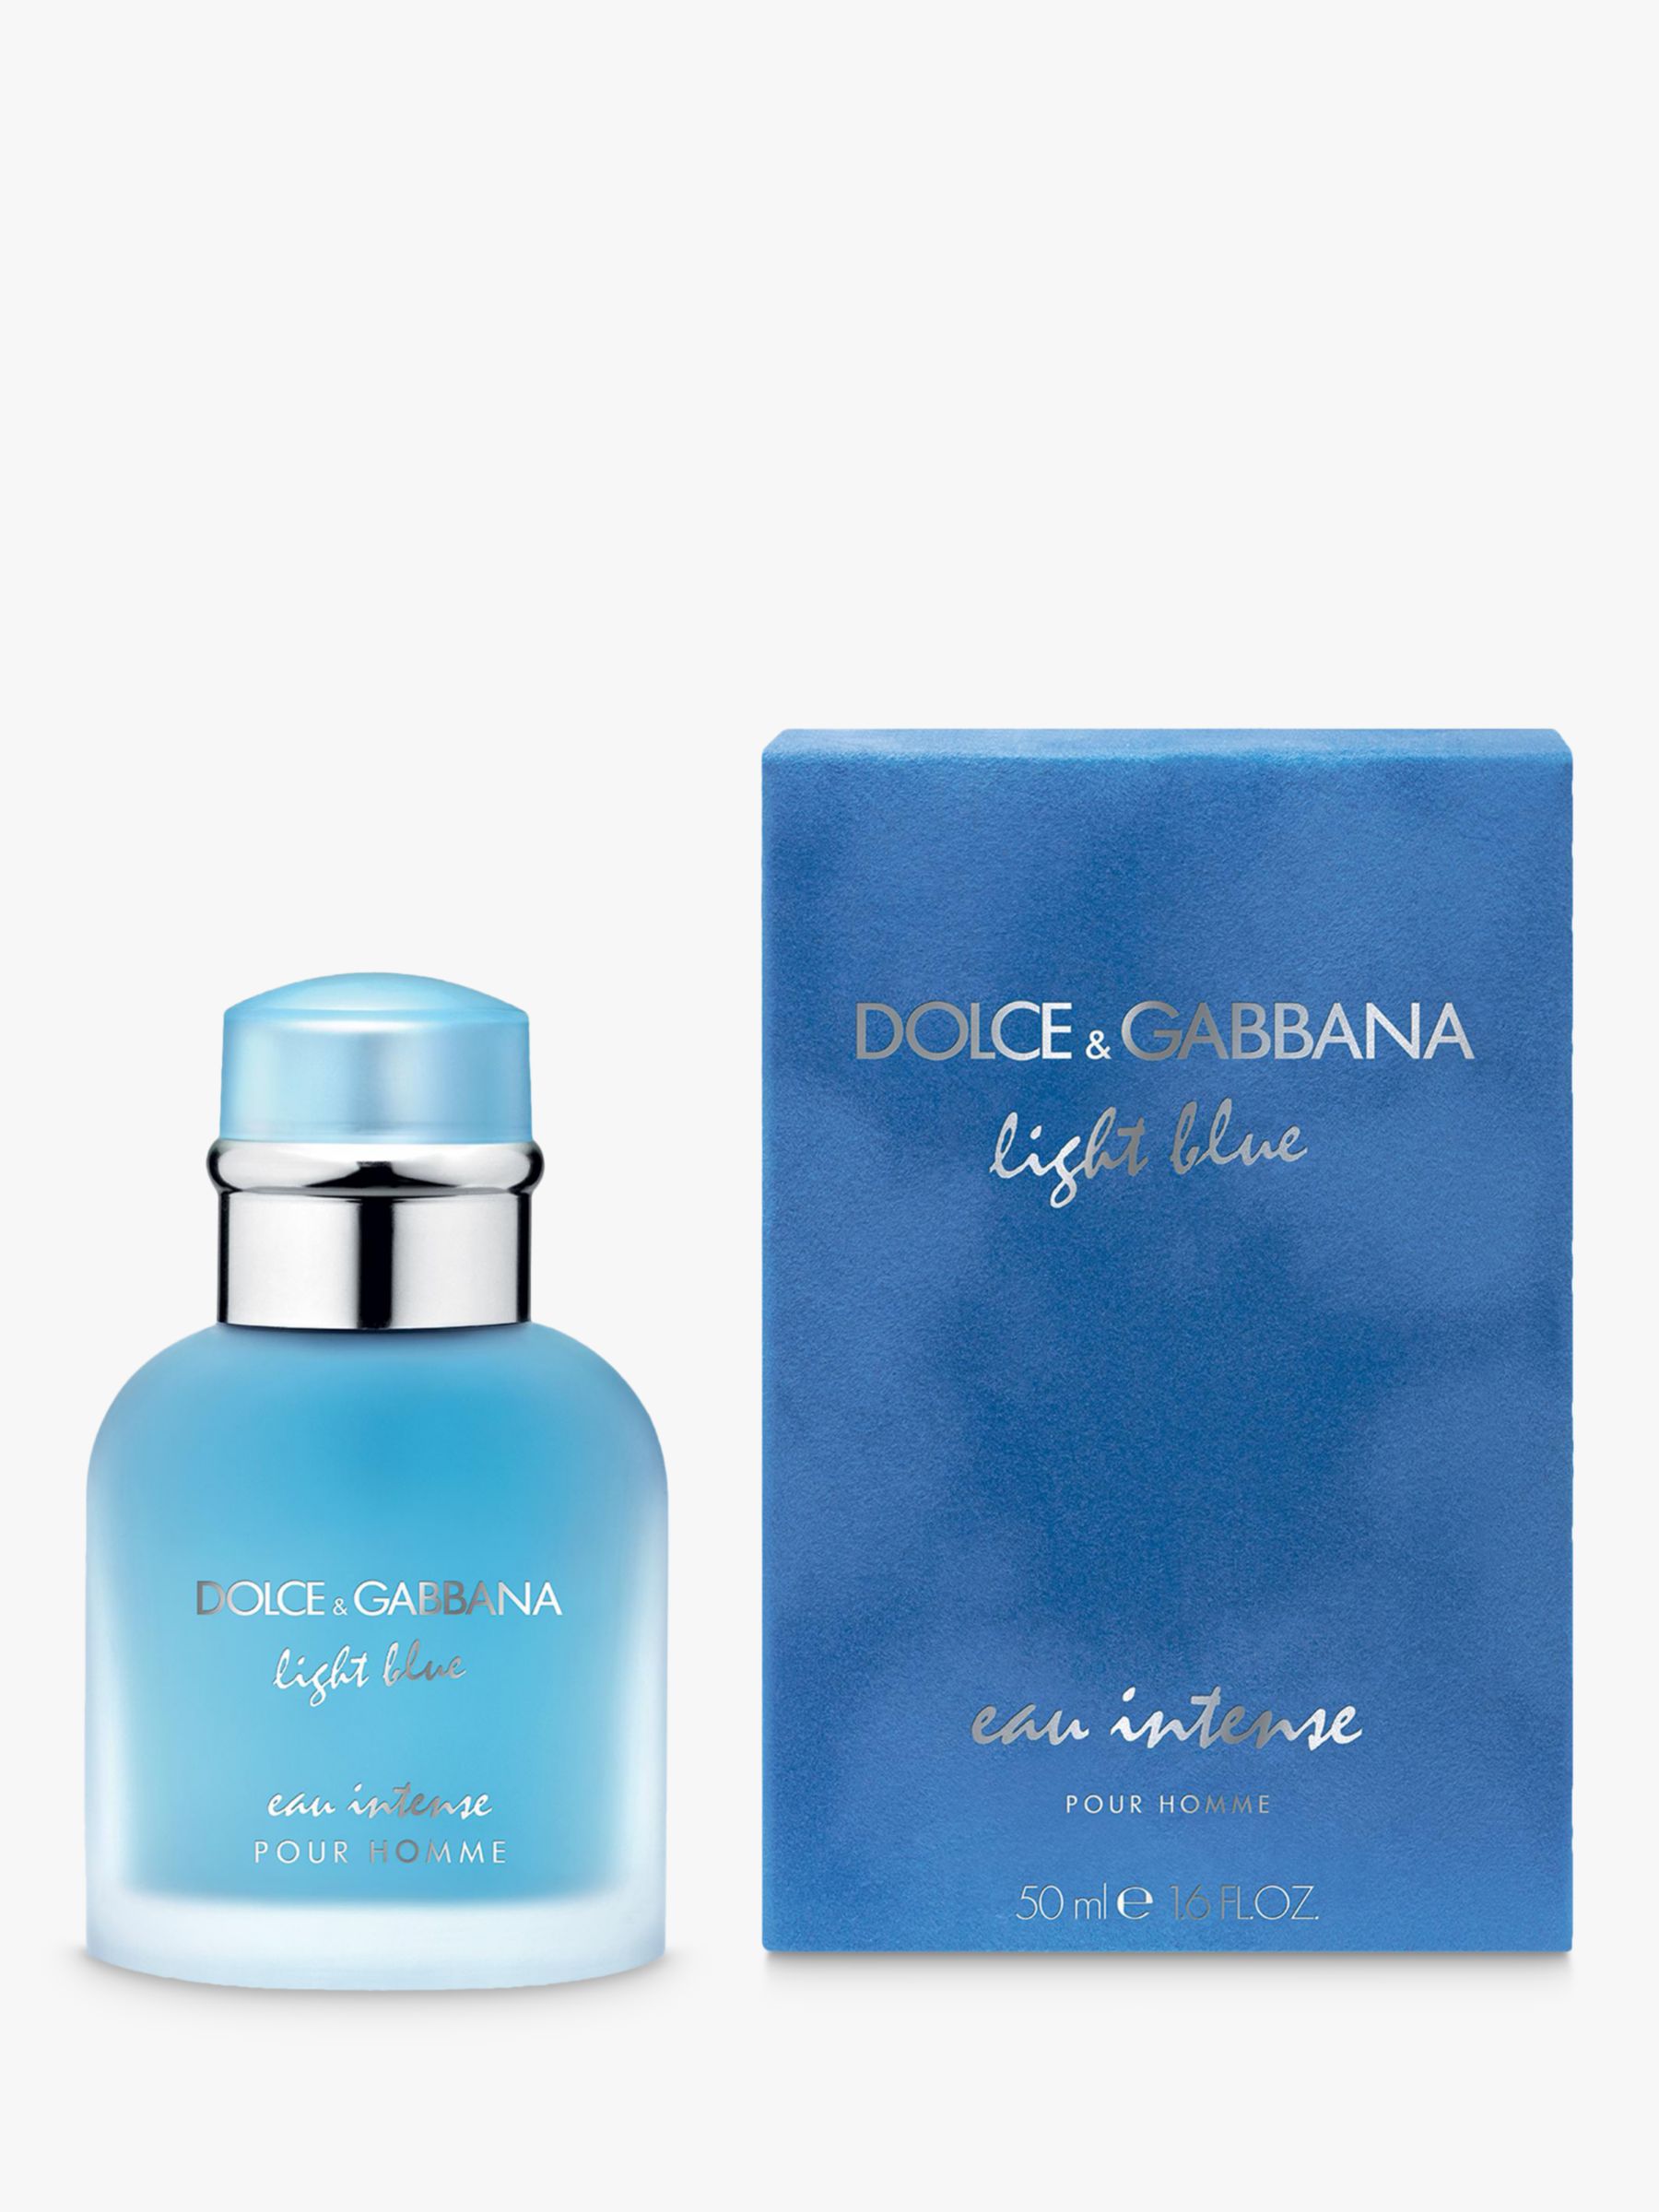 dolce & gabbana light blue eau intense pour homme